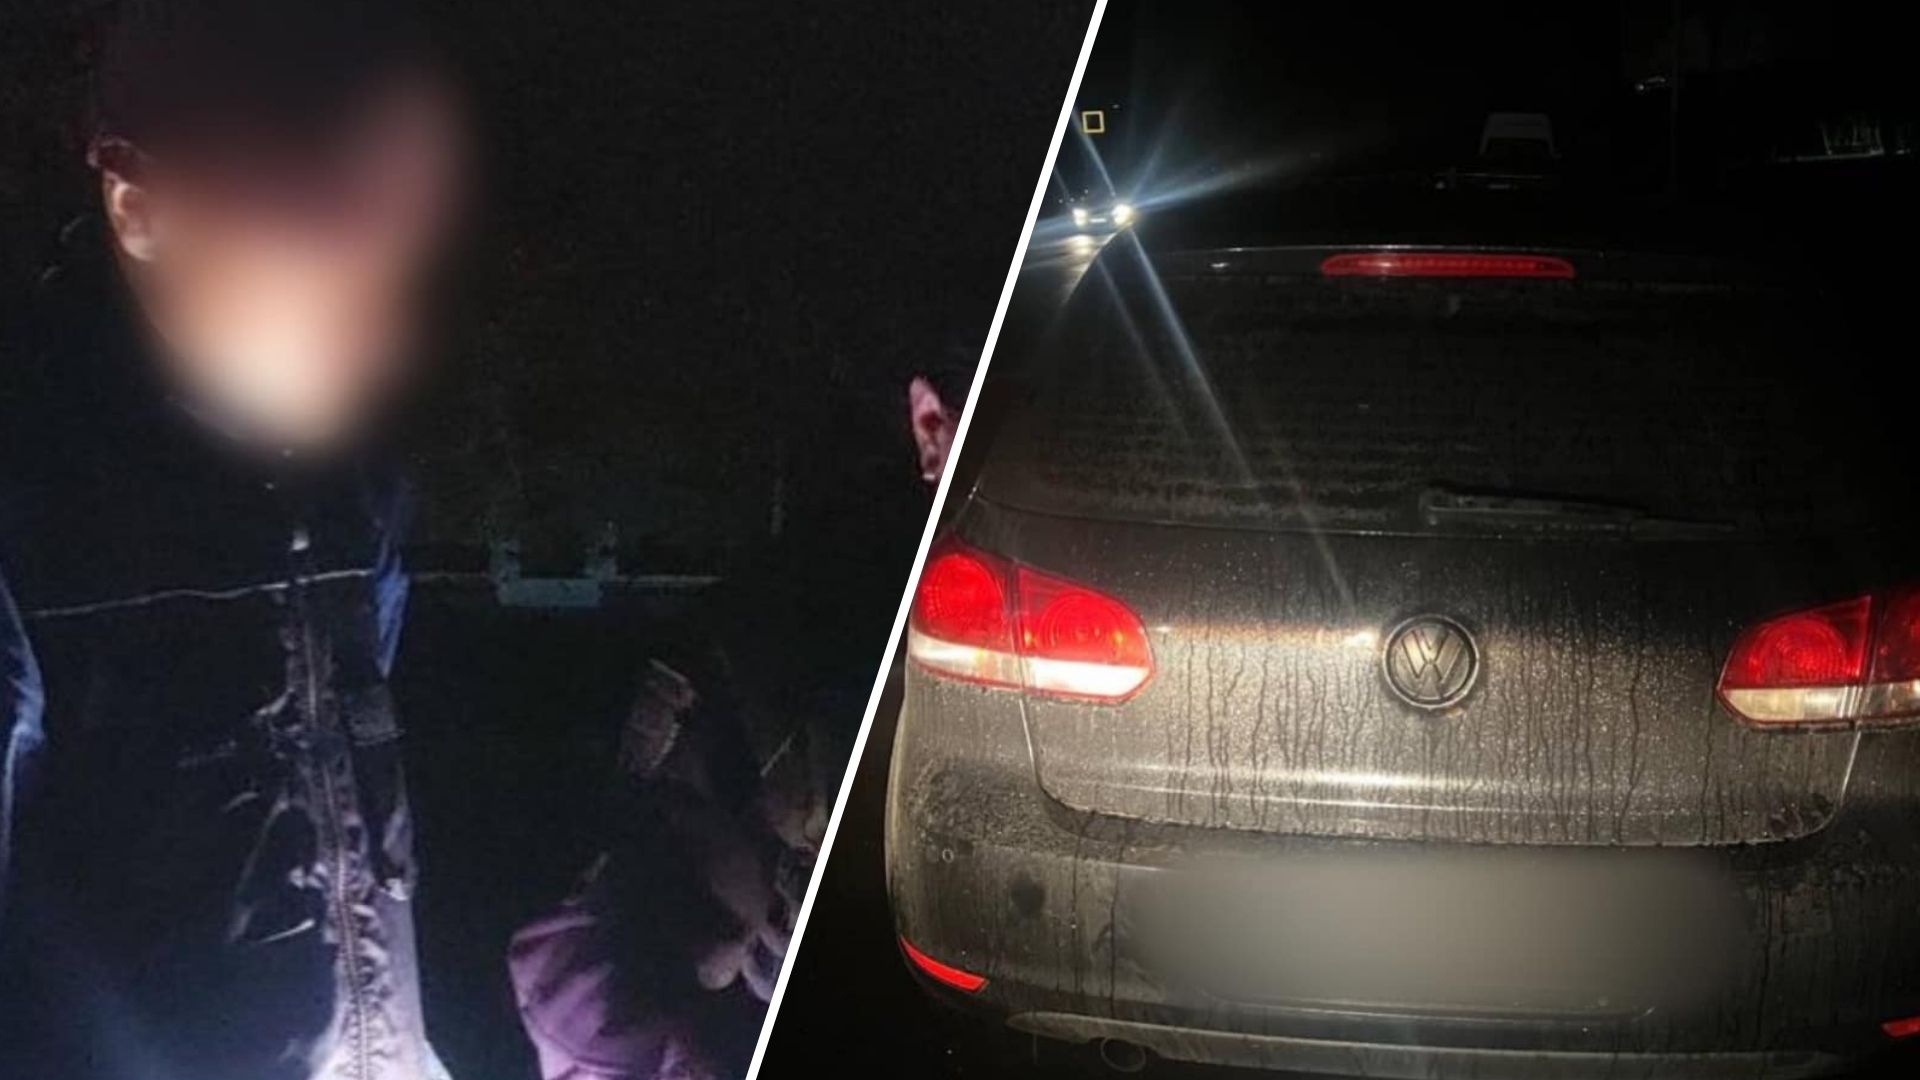 Сегодня в полночь на проспекте Свободы в Ужгороде патрульная милиция остановила водителя автомобиля Volkswagen за нарушение правил дорожного движения.